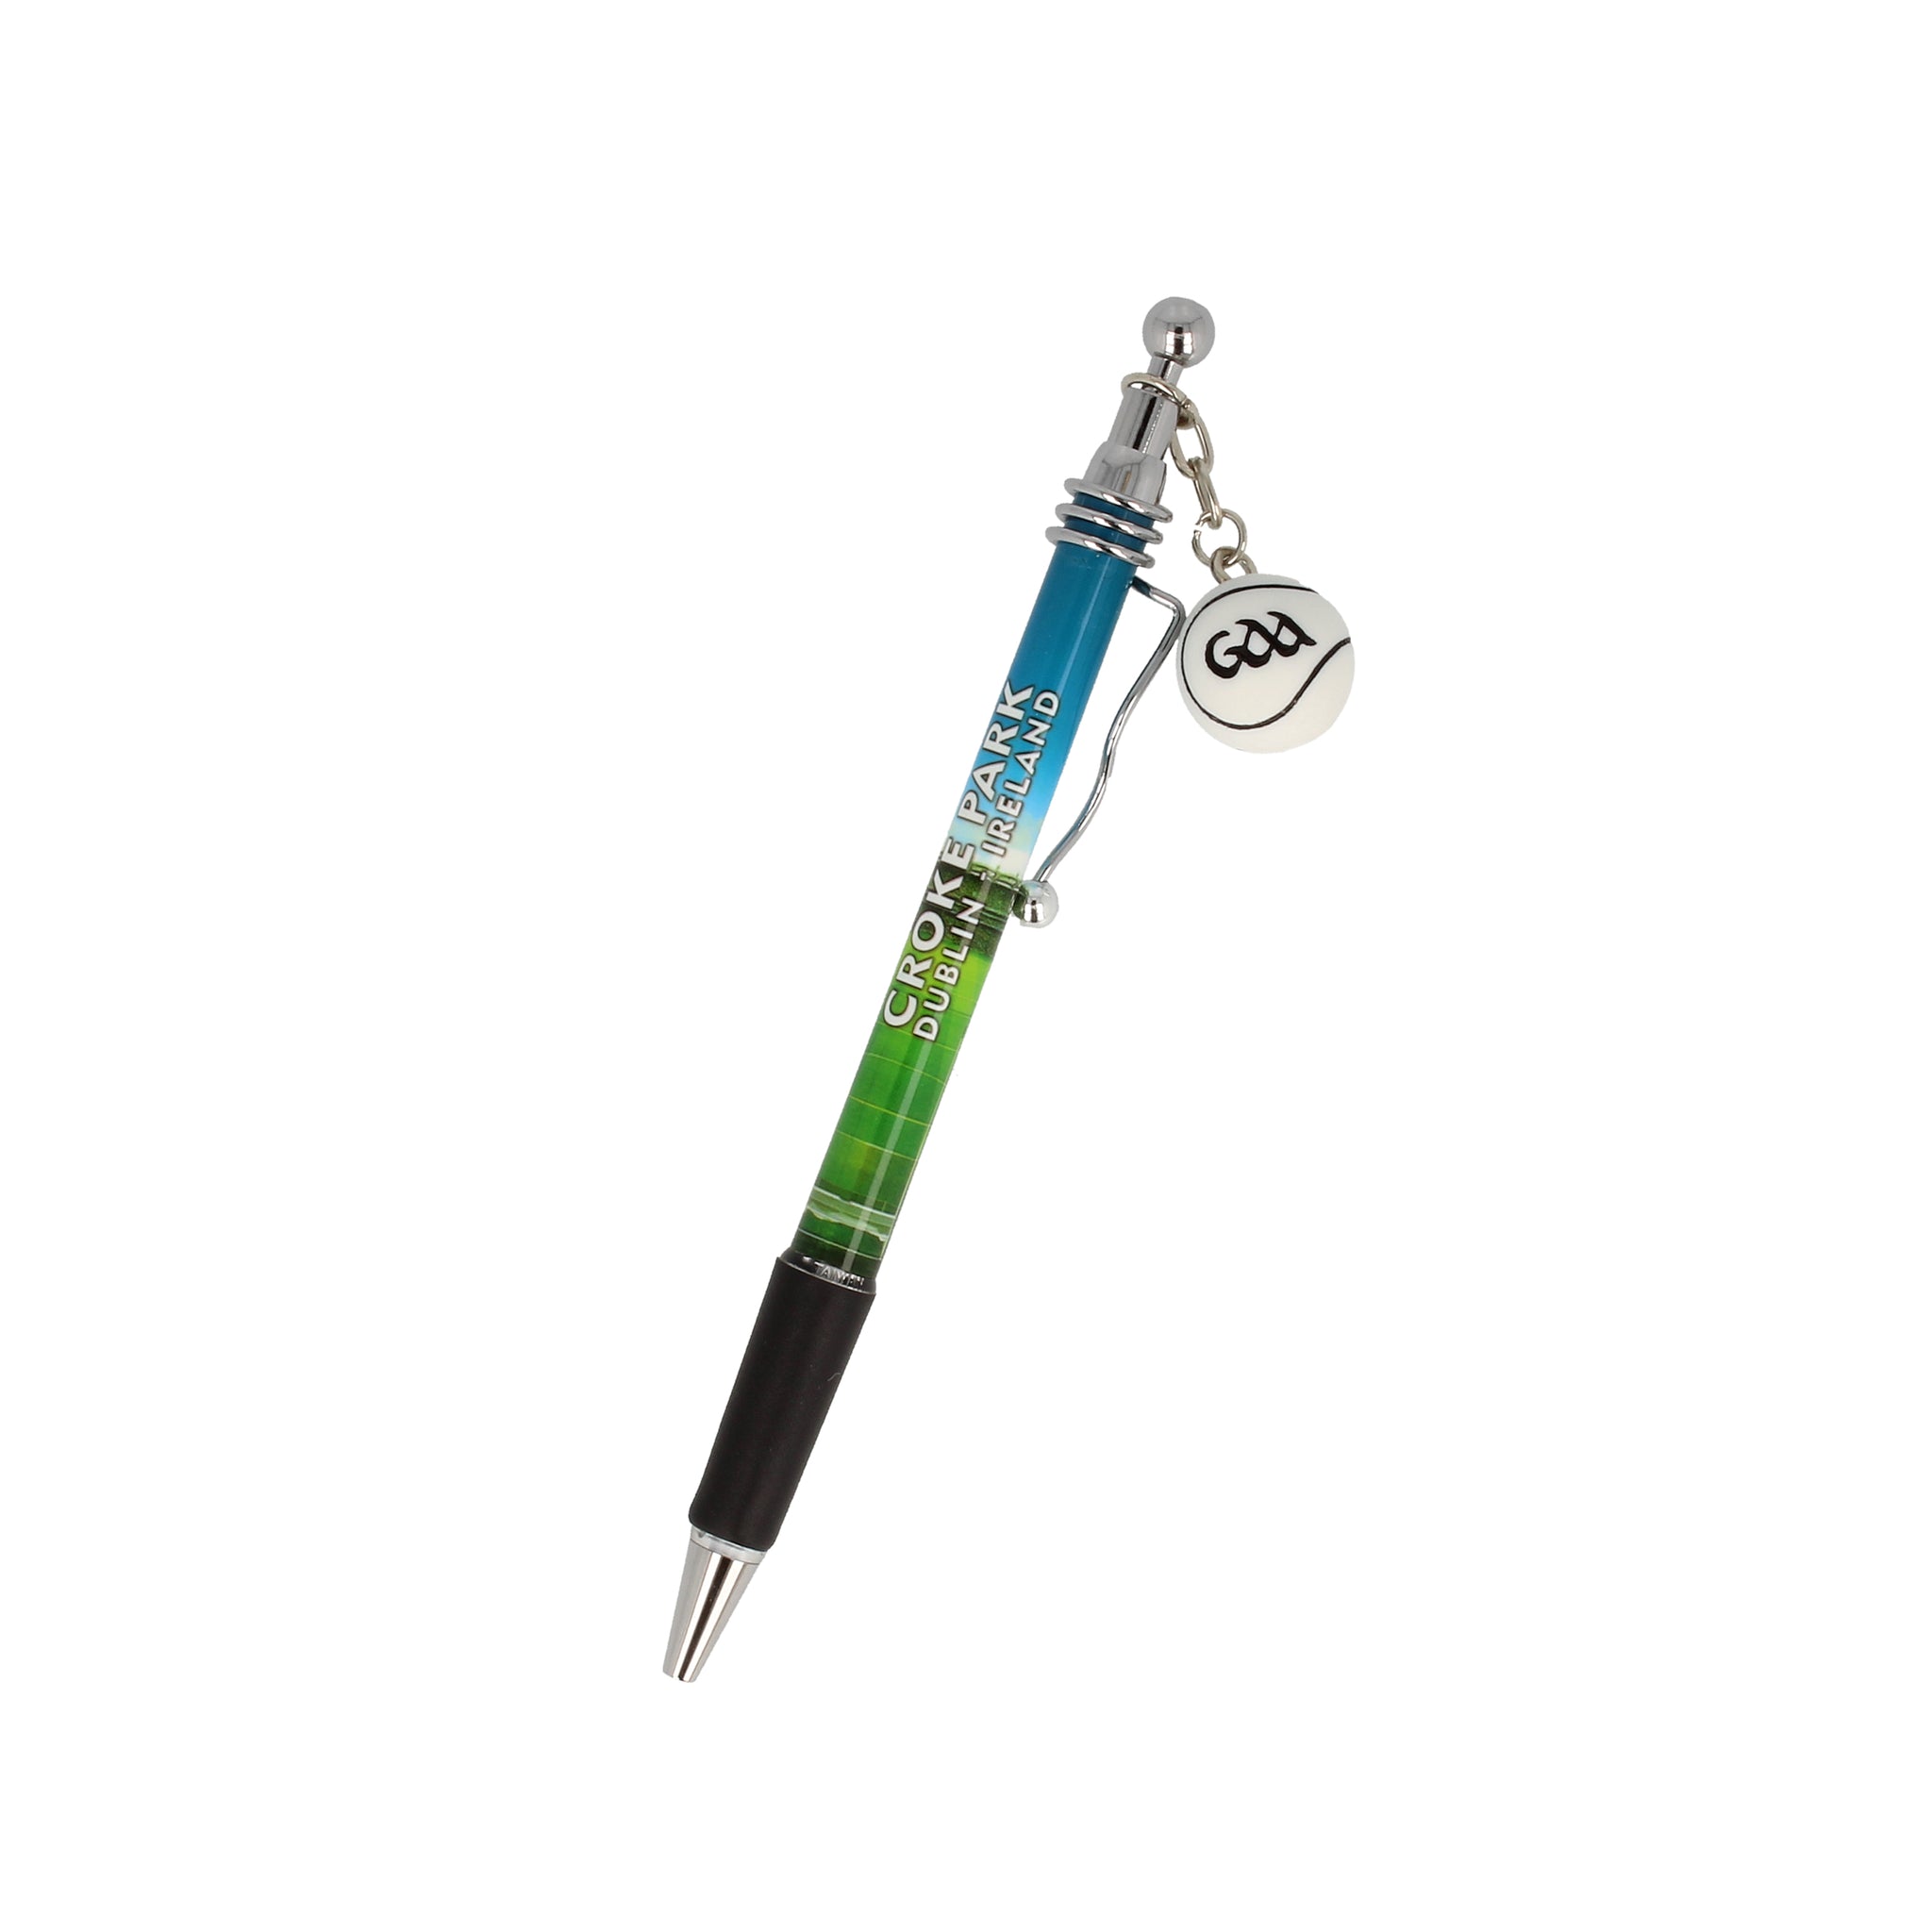 Croke Park pen with sliotar charm